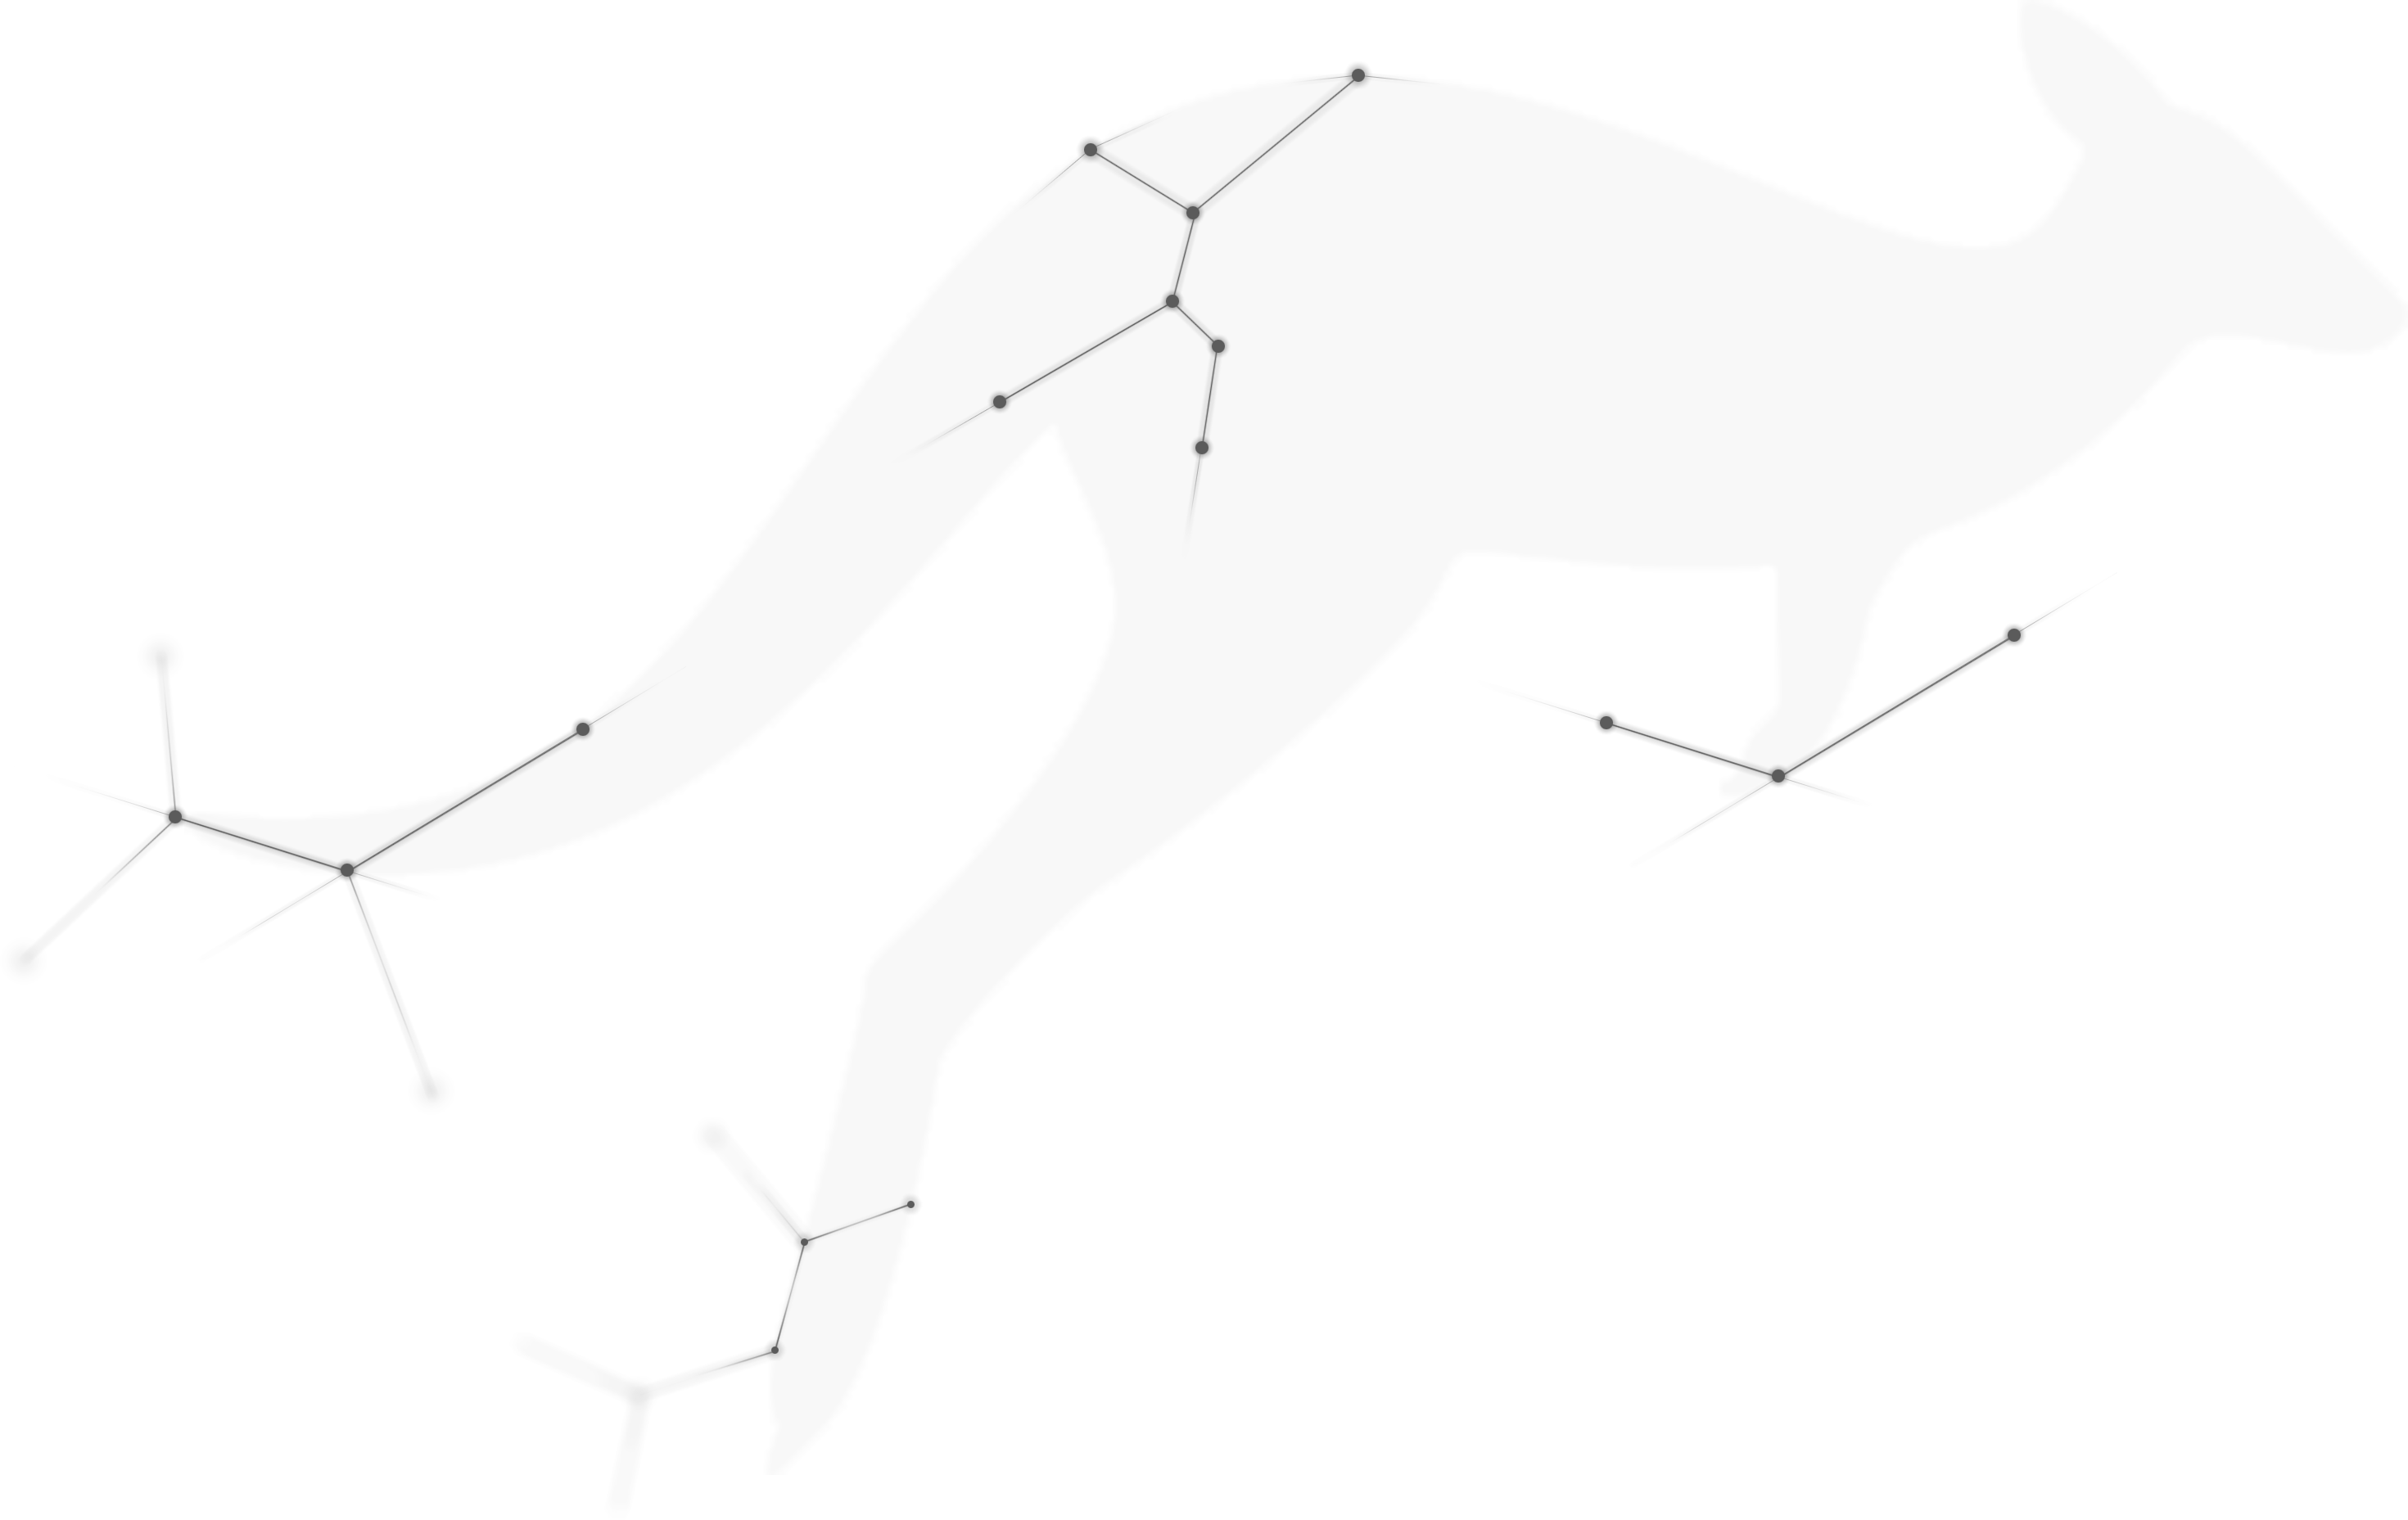 Kangaroo watermark